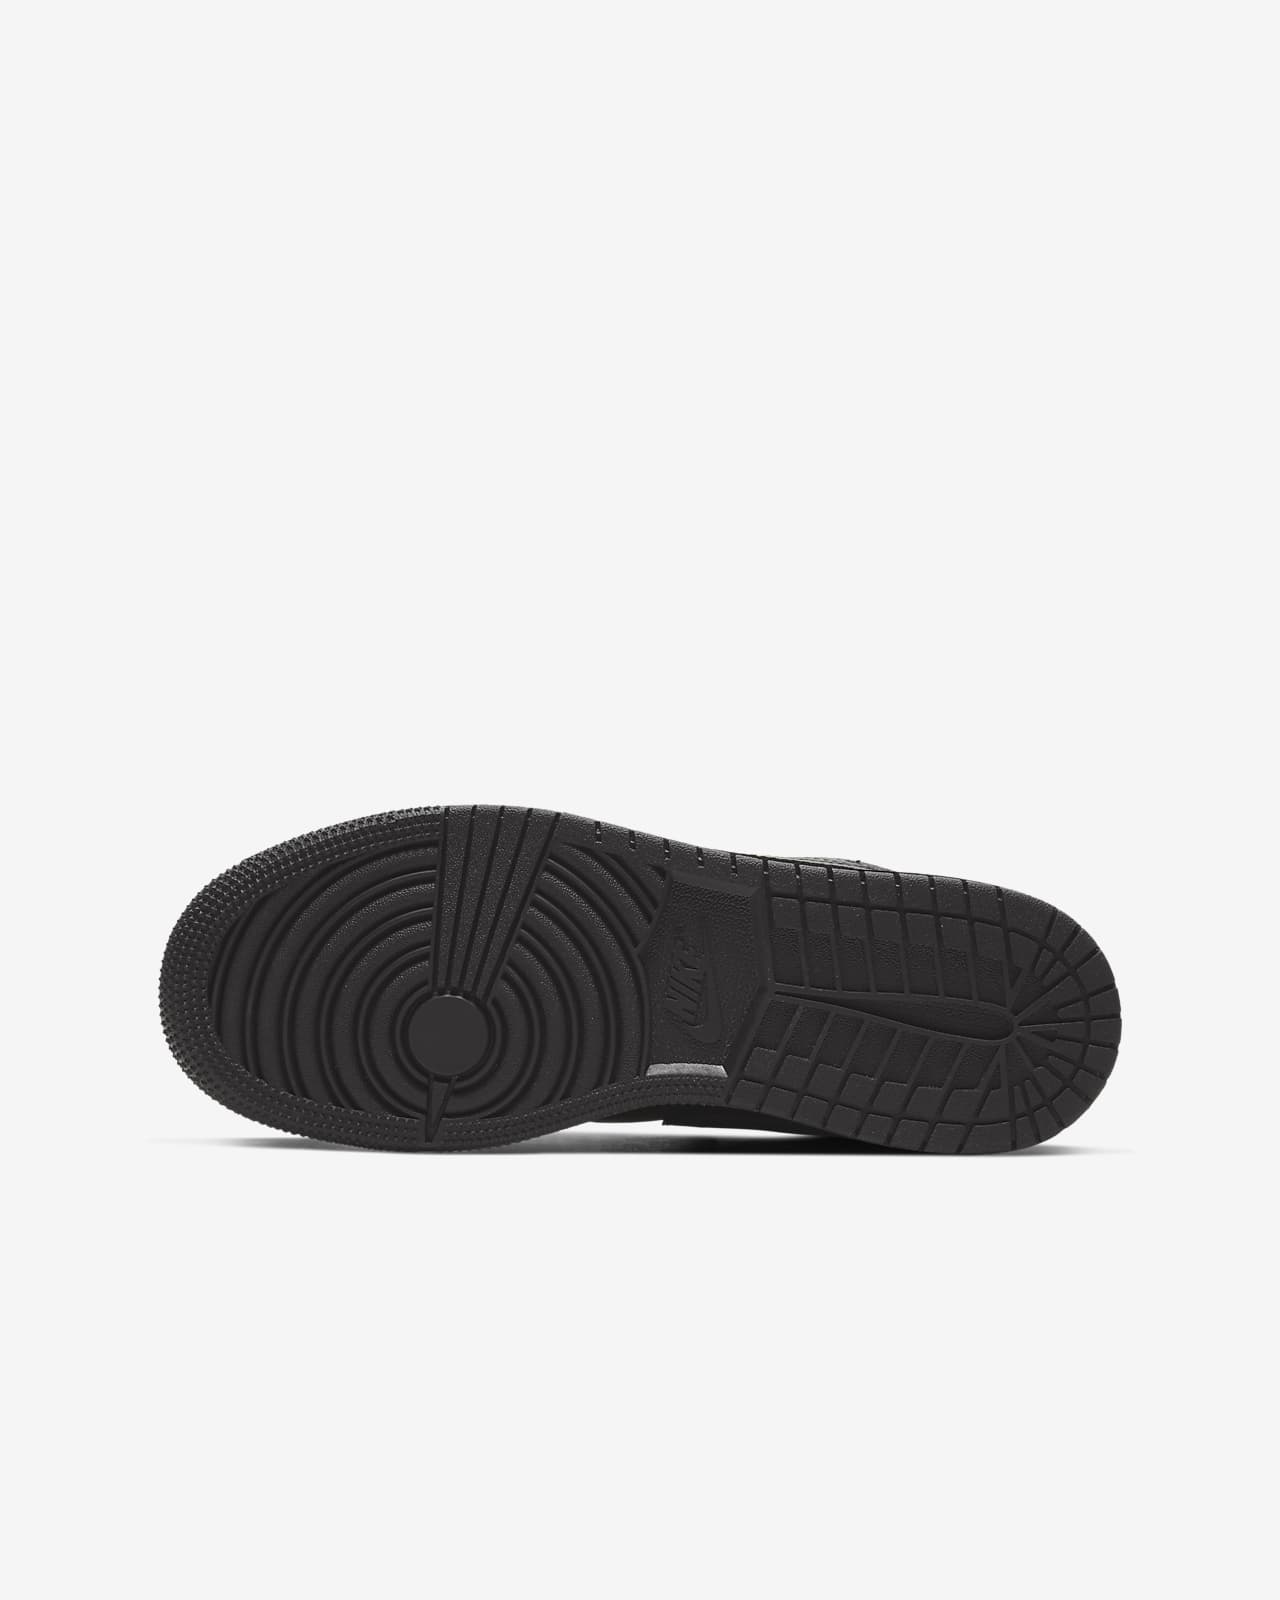 Air Jordan 1 Low Older Kids' Shoes. Nike NZ